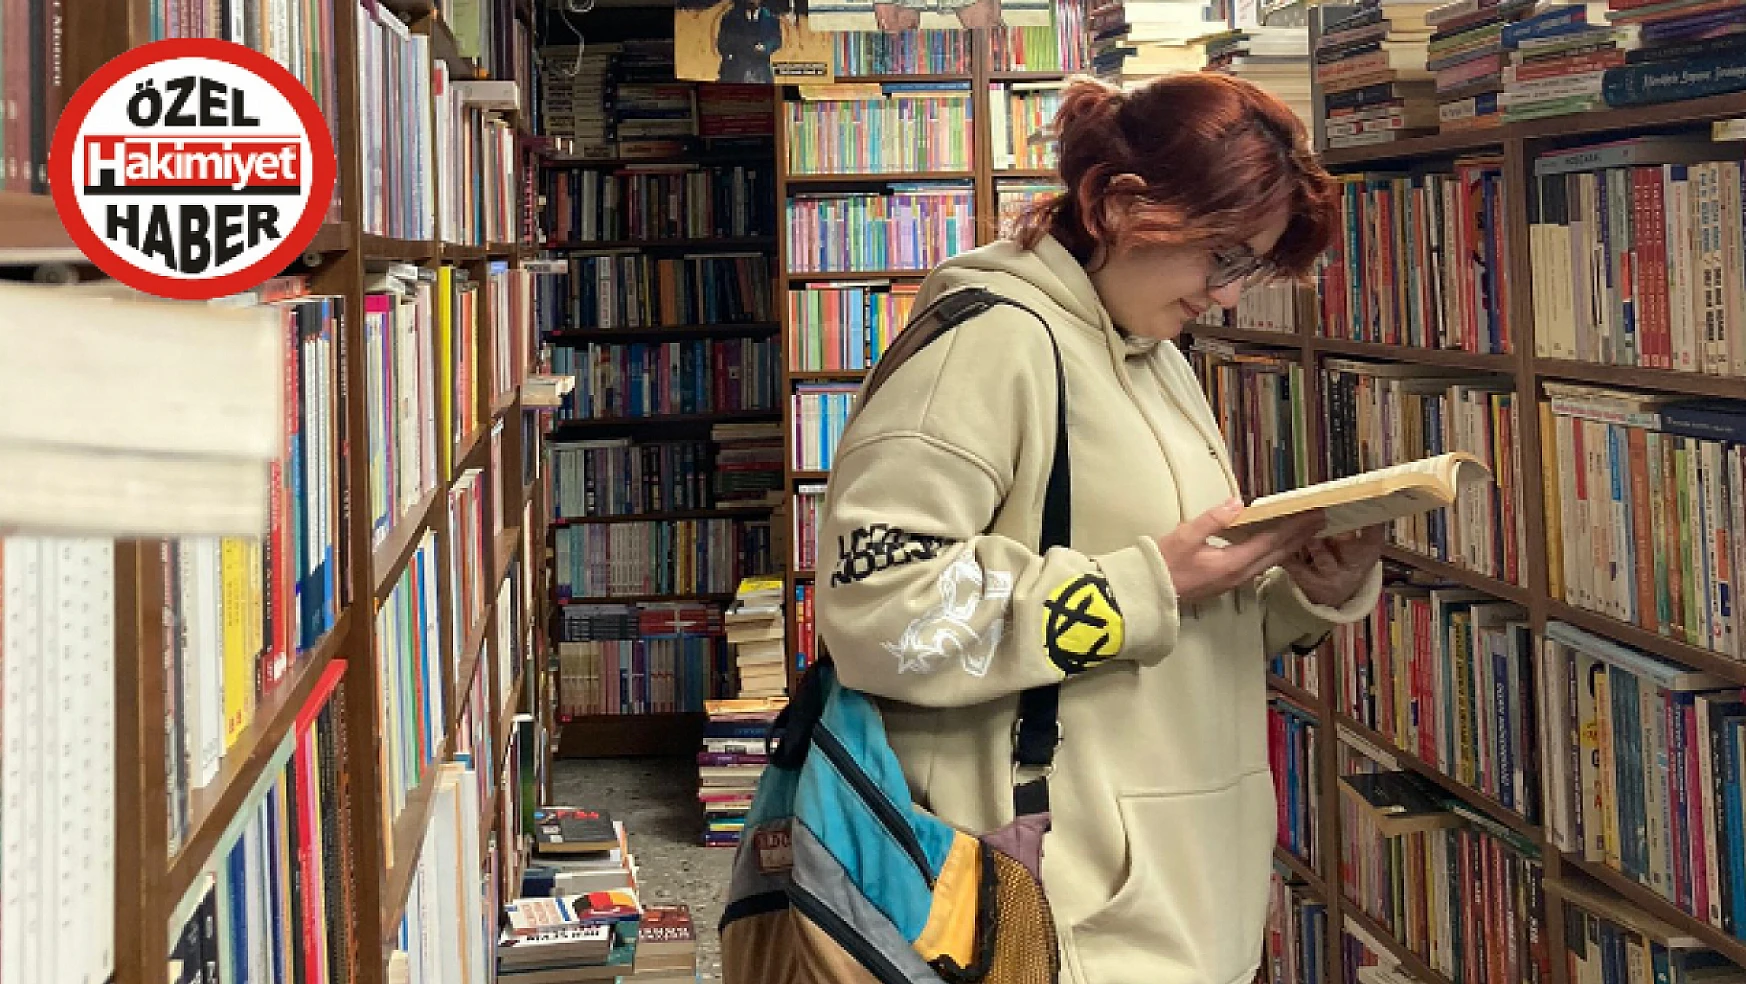 Konya'da en çok hangi tür kitaplar okunuyor? 